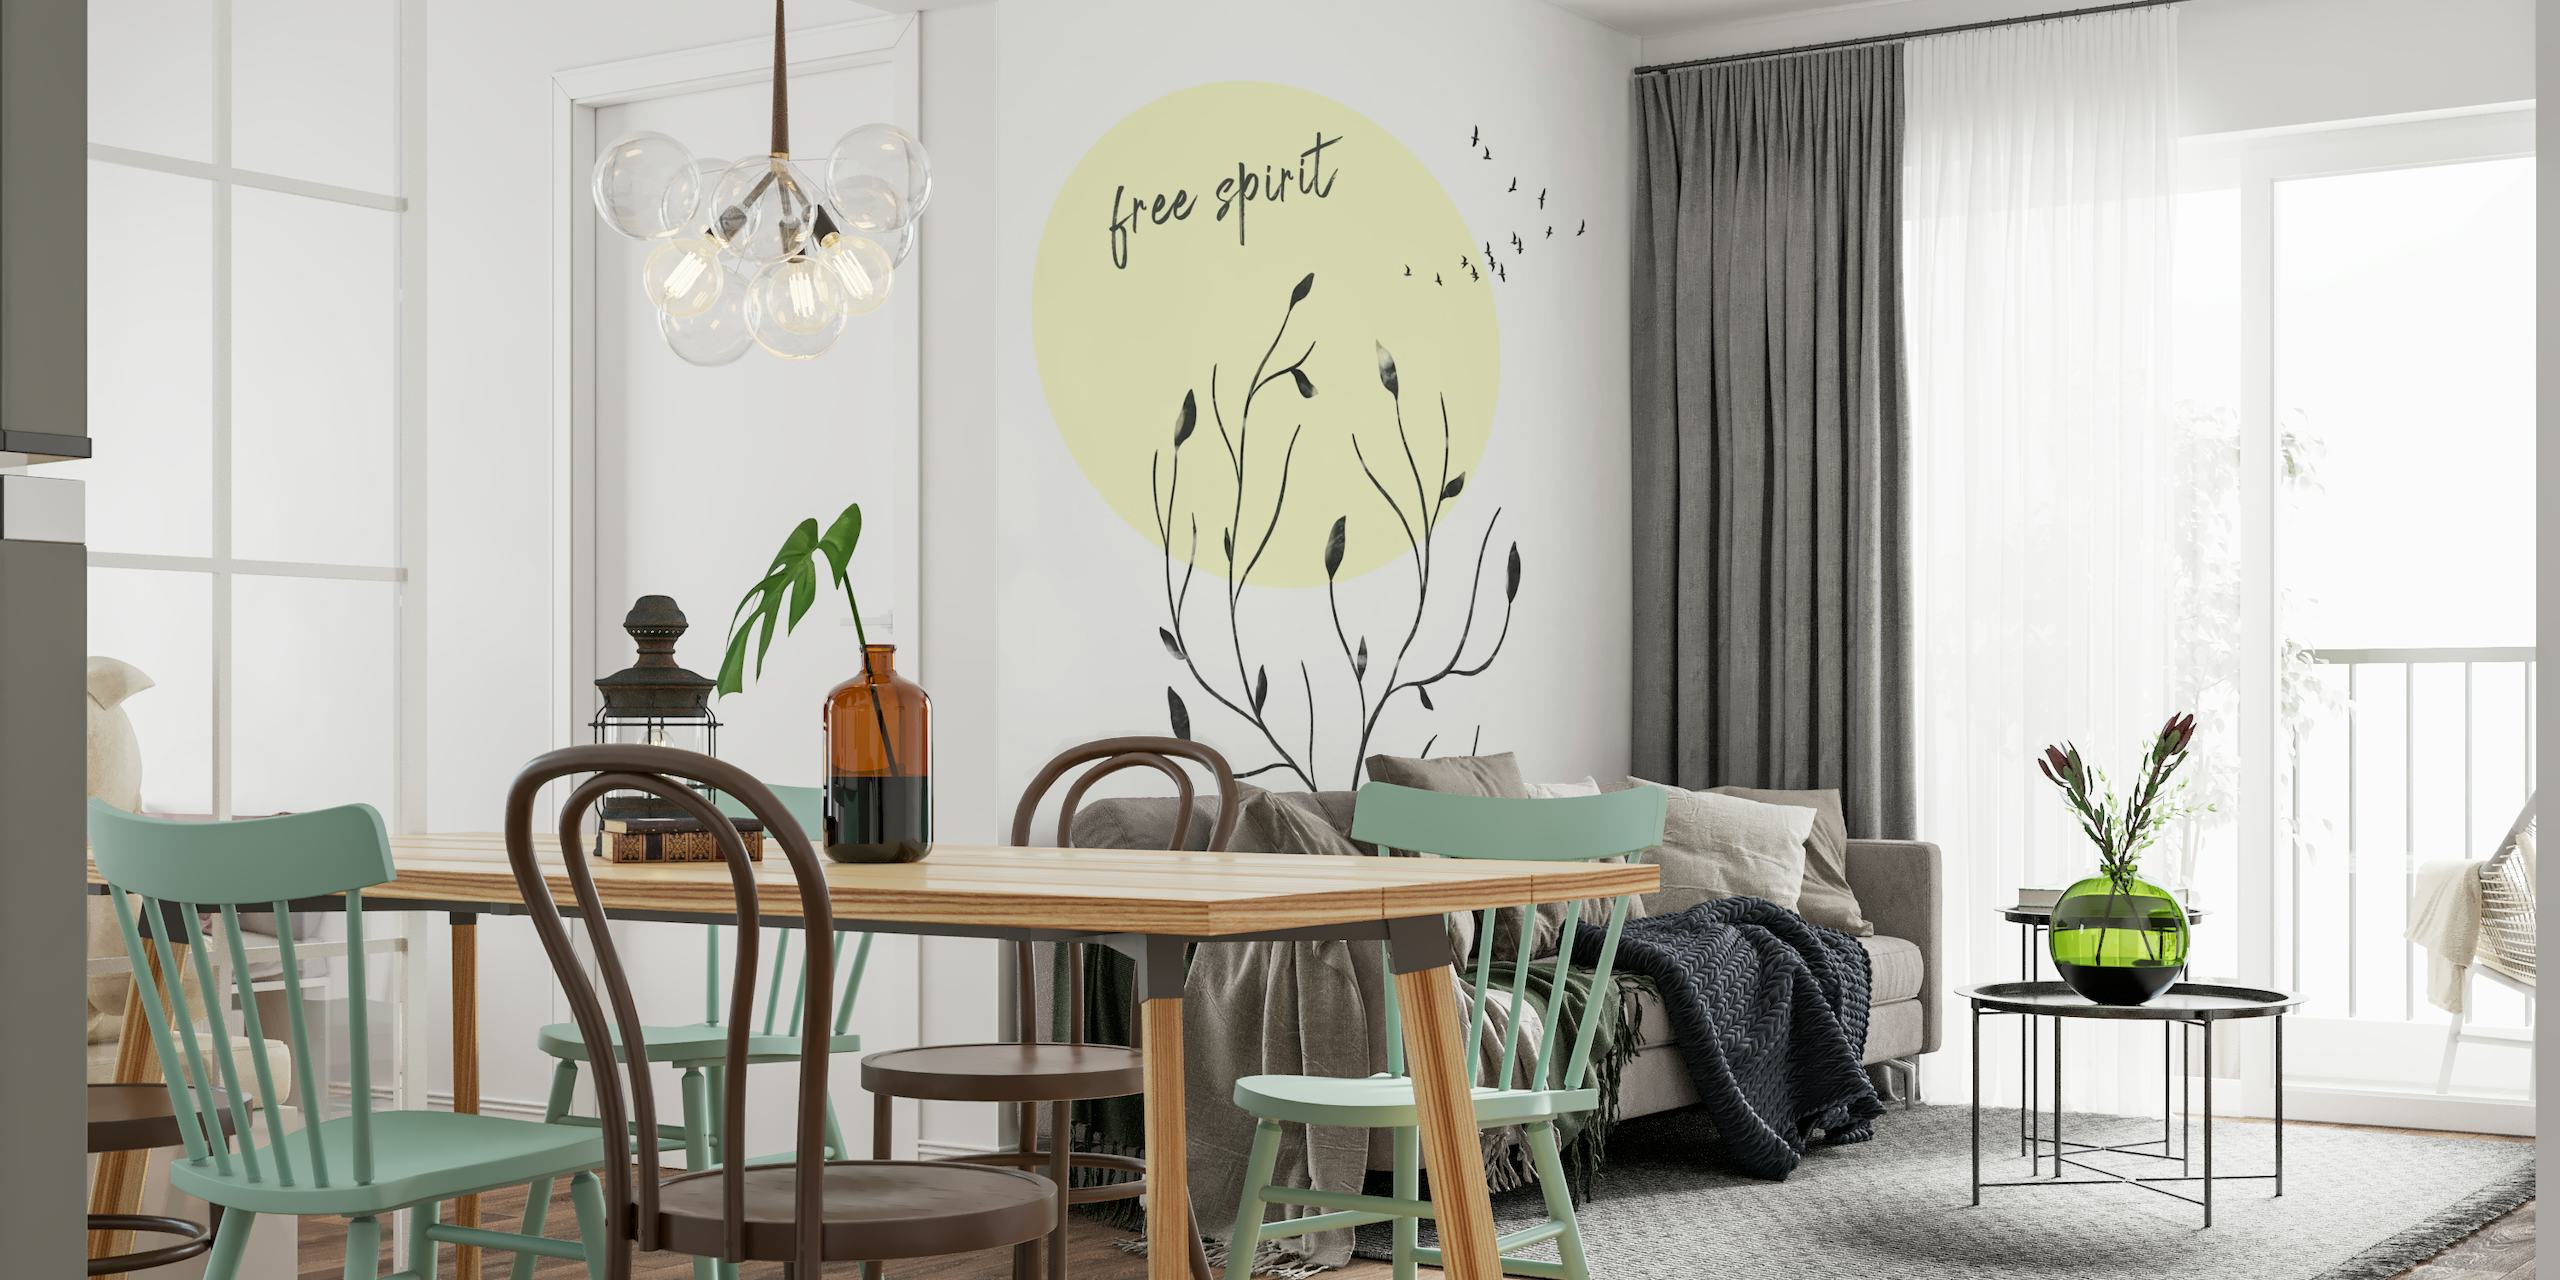 Minimalistisches Wandbild „Free Spirit“ mit botanischen Silhouetten und Text, in Creme und Schwarz mit einem gelben Kreis